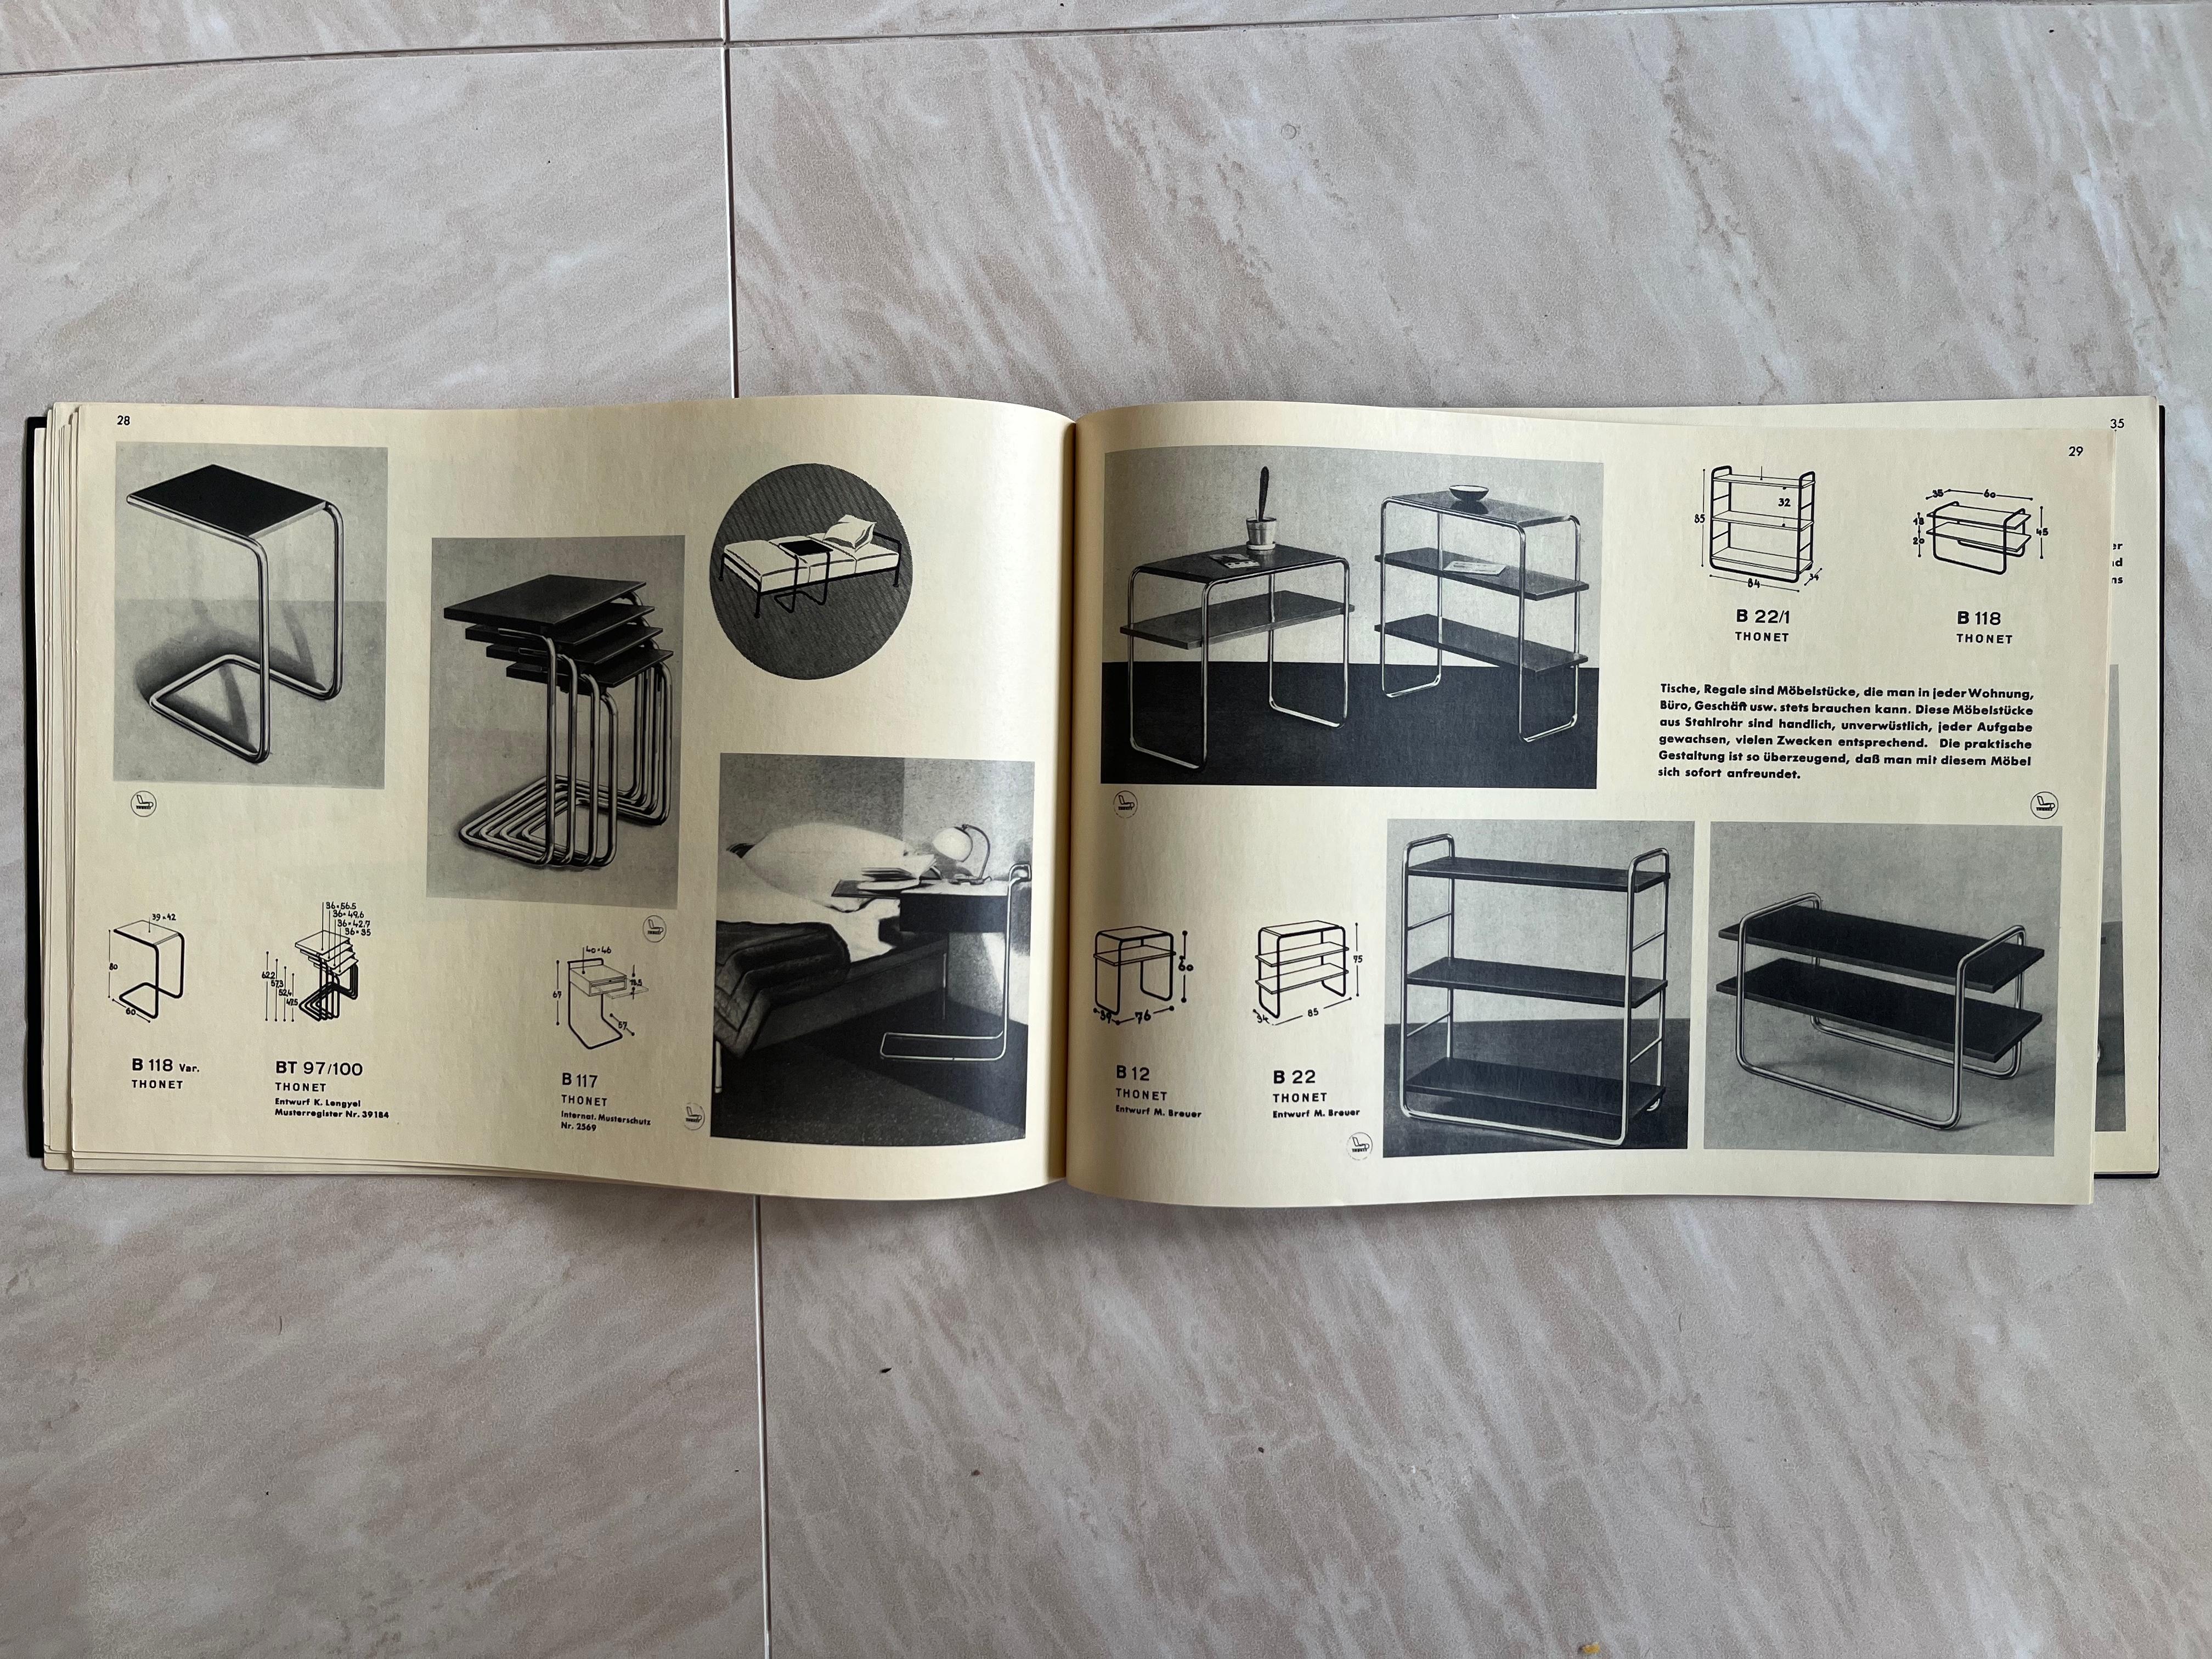 Bauhaus Original Thonet Stahlrohrmobel Furniture Catalogue, 1980s For Sale